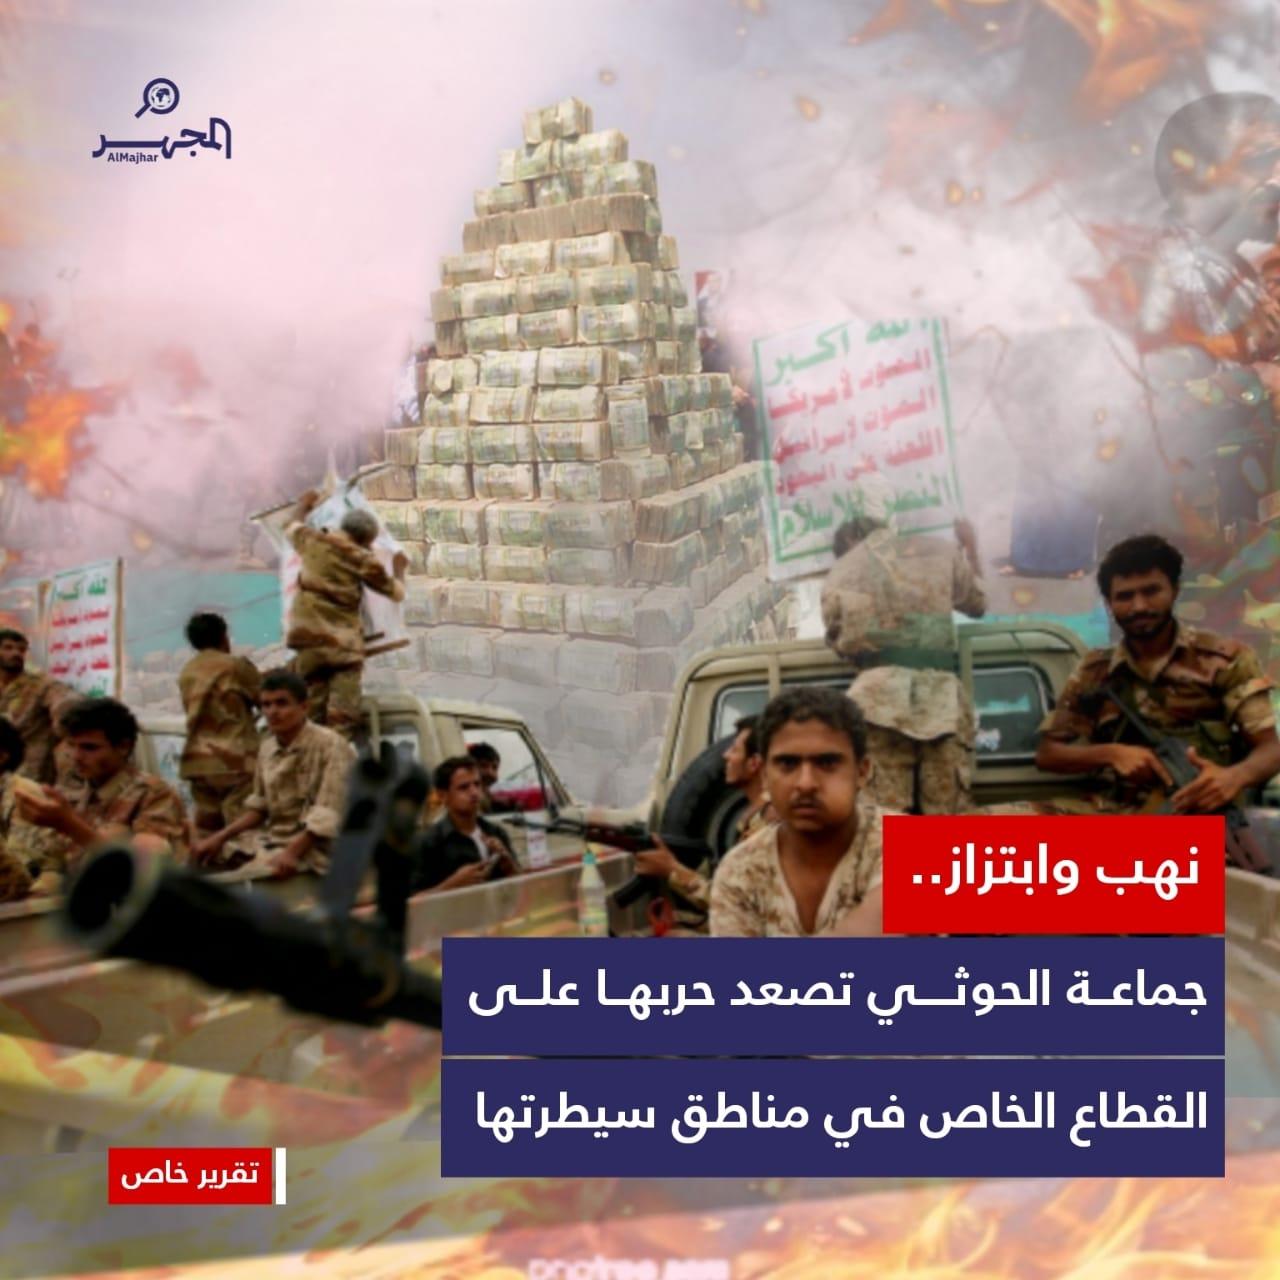 نهب وابتزاز.. جماعة الحوثي تصعد حربها على القطاع الخاص في مناطق سيطرتها